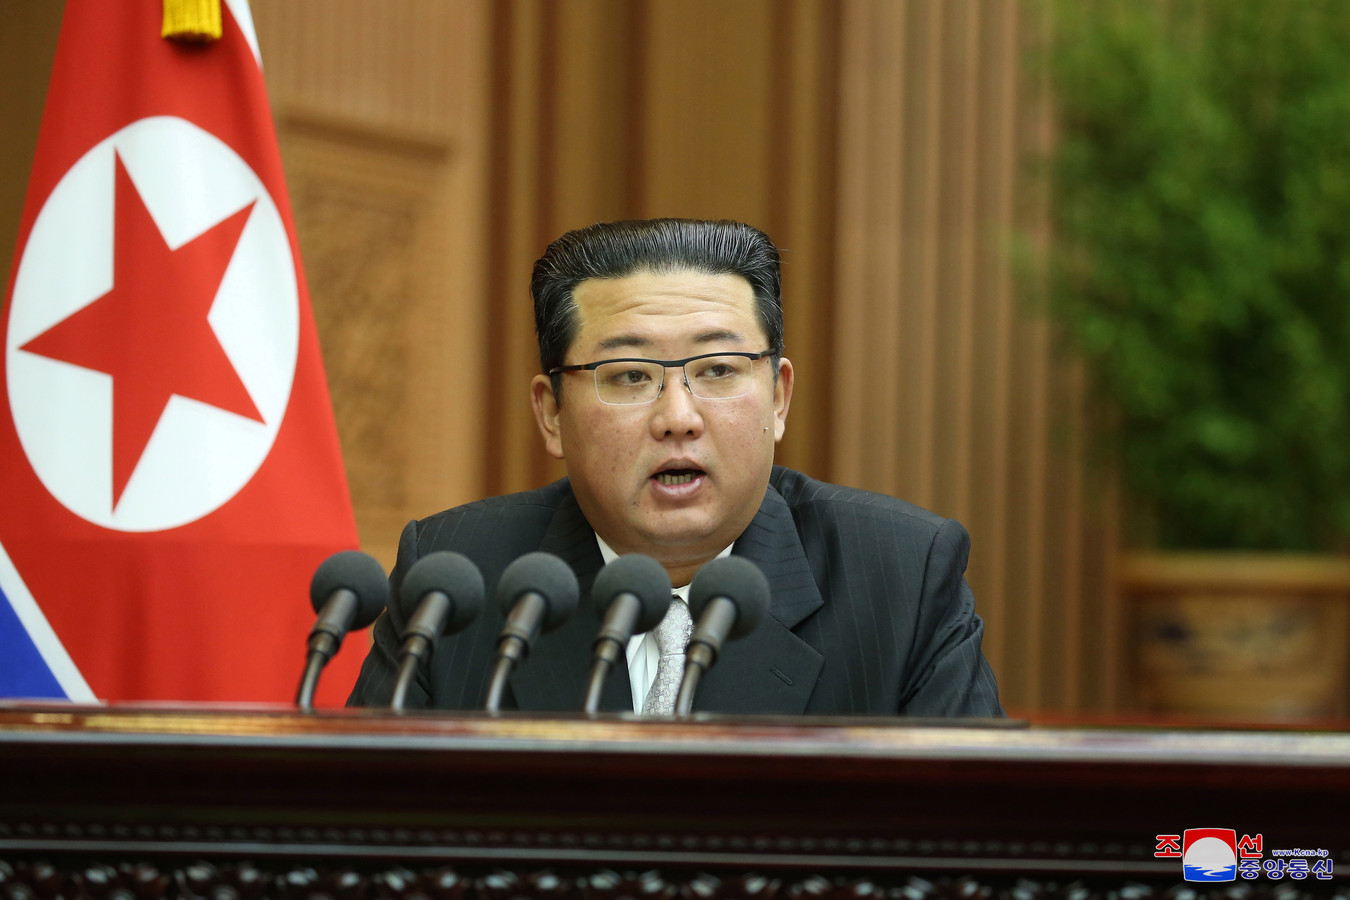 De Noord-Koreaanse leider Kim Jong-un meldde vorige week al dat hij de hotline met het zuiden wilde herstellen. Dat is vanochtend ook gebeurd.